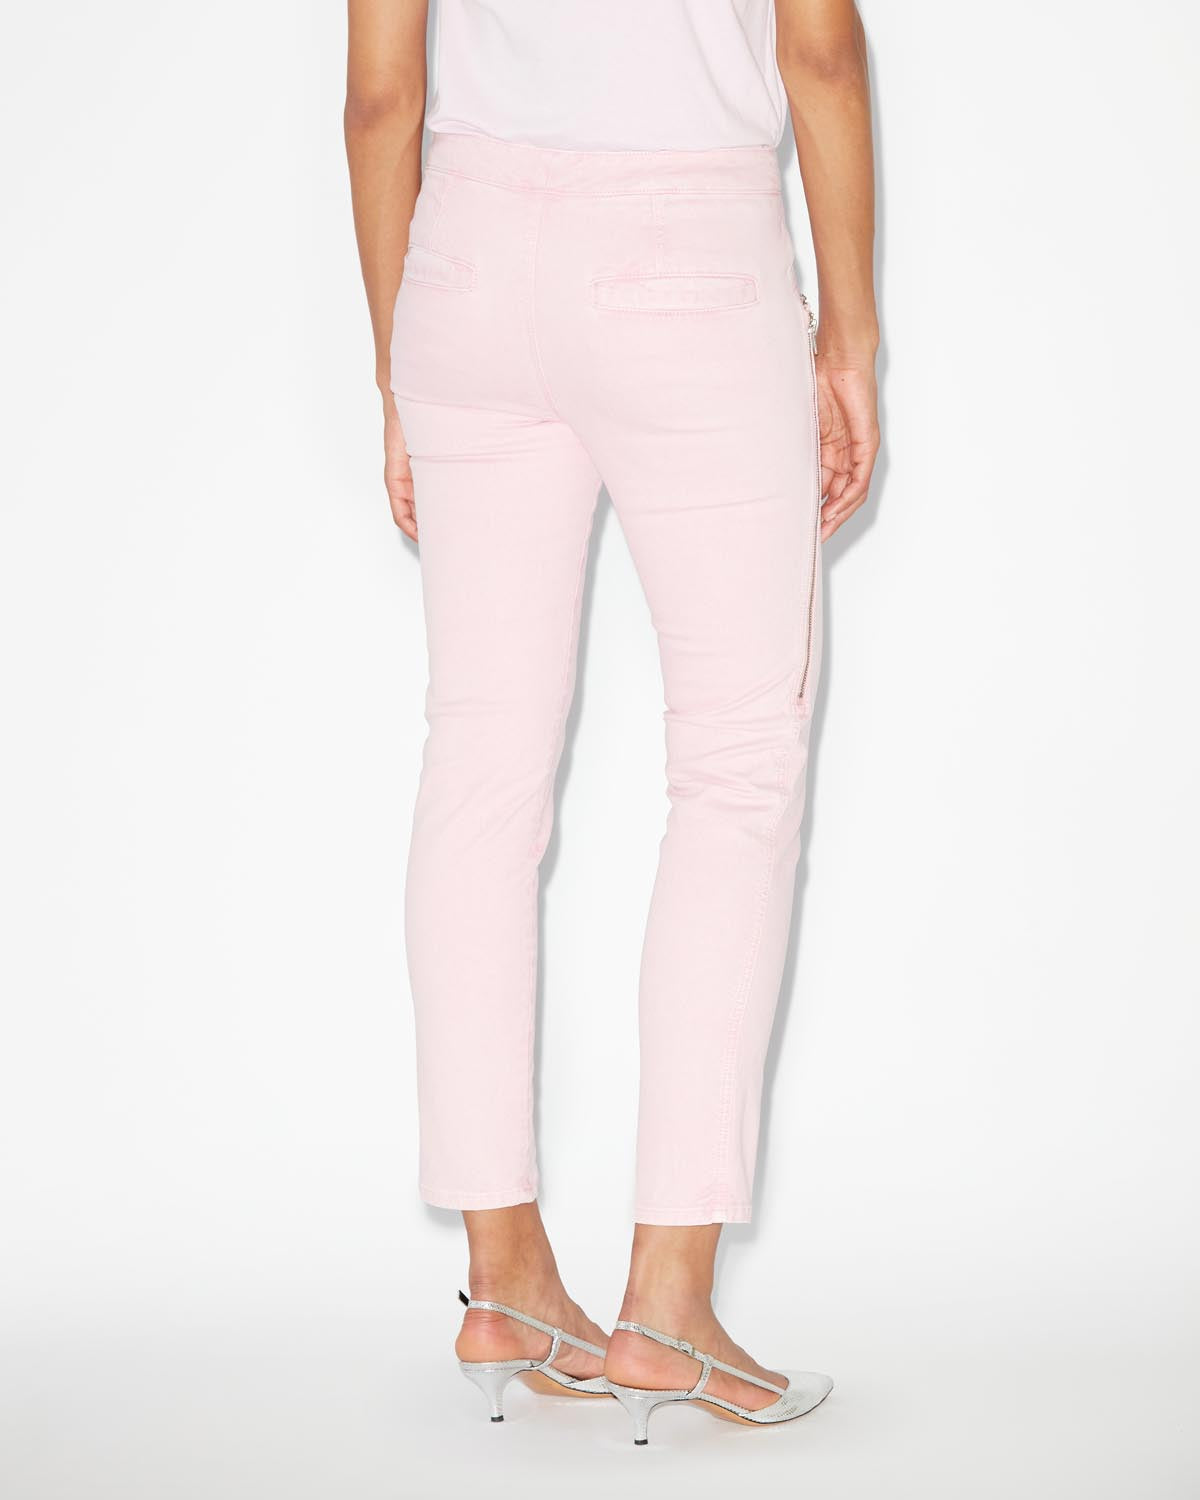 Prezi pants Woman Light pink 3